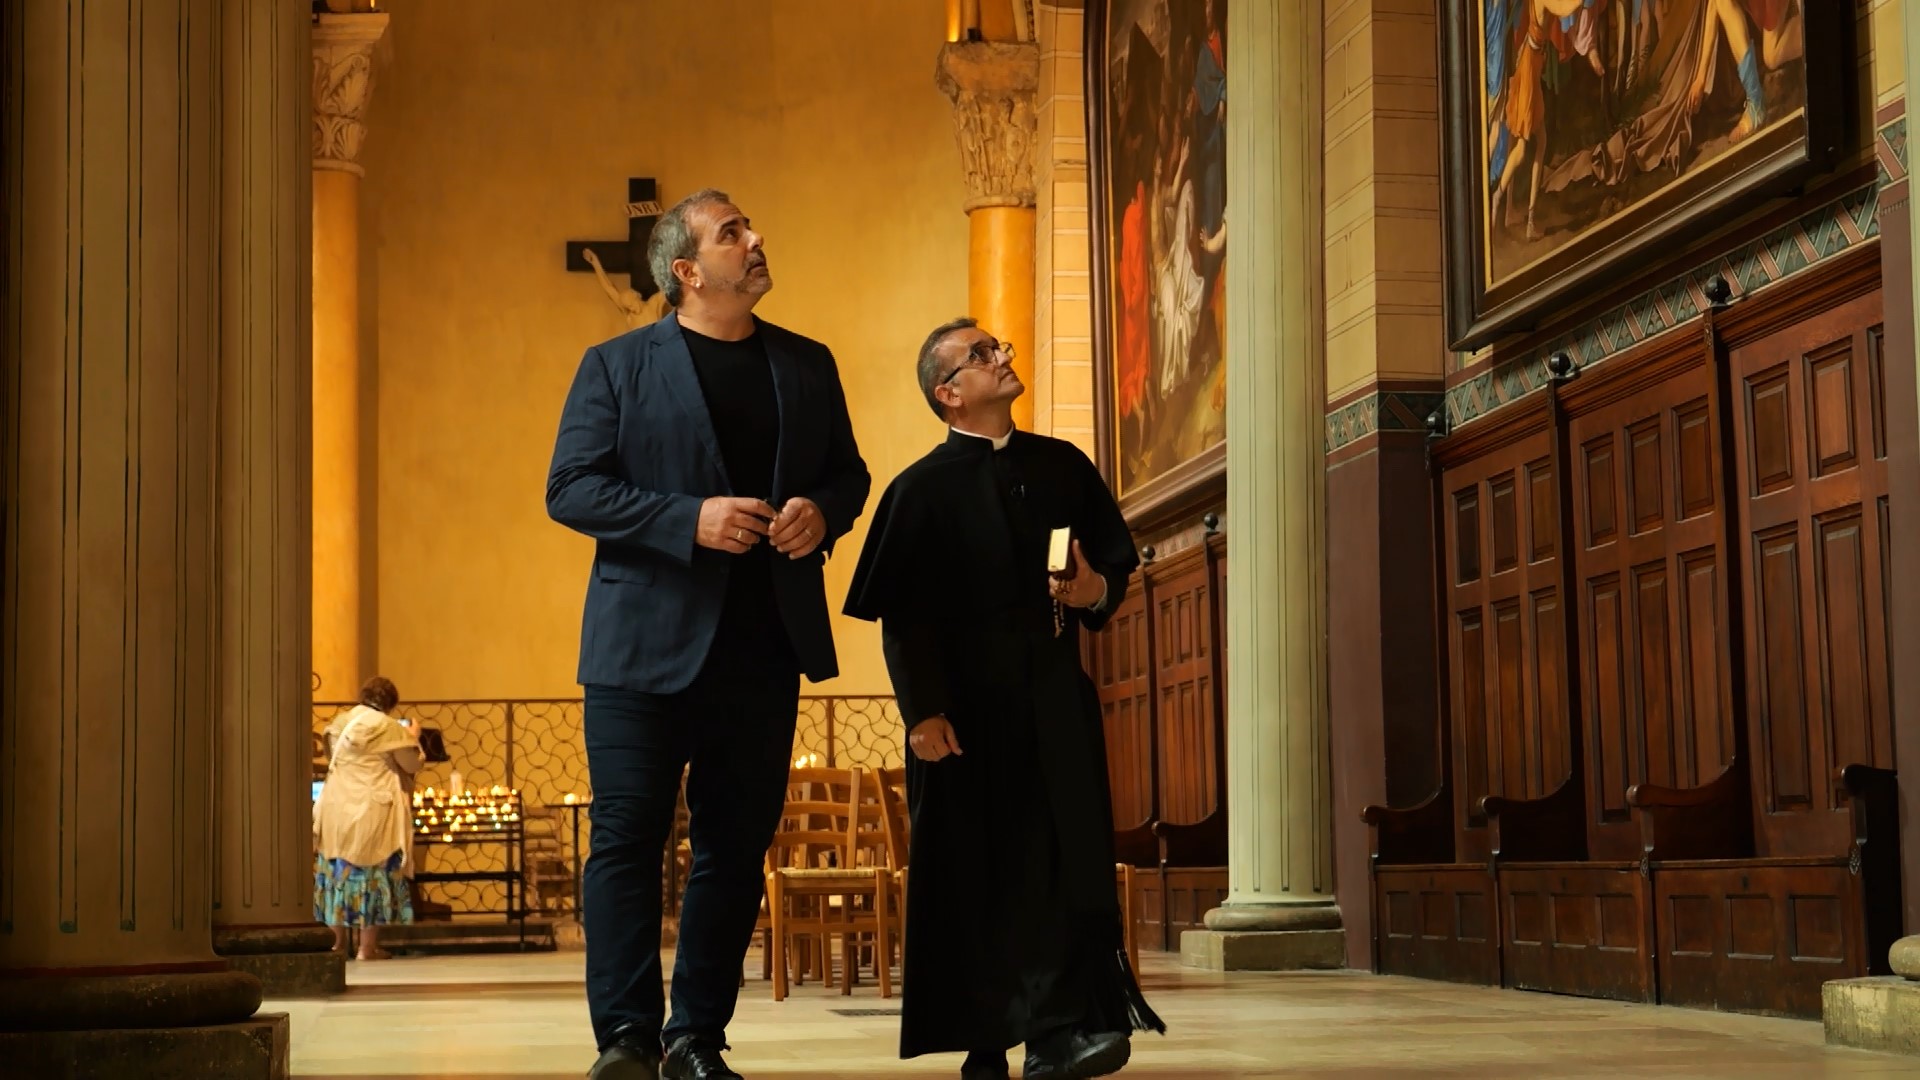 Rodrigo Alvarez visita a Igreja mais antiga de Paris no "Expedições ao Sagrado"